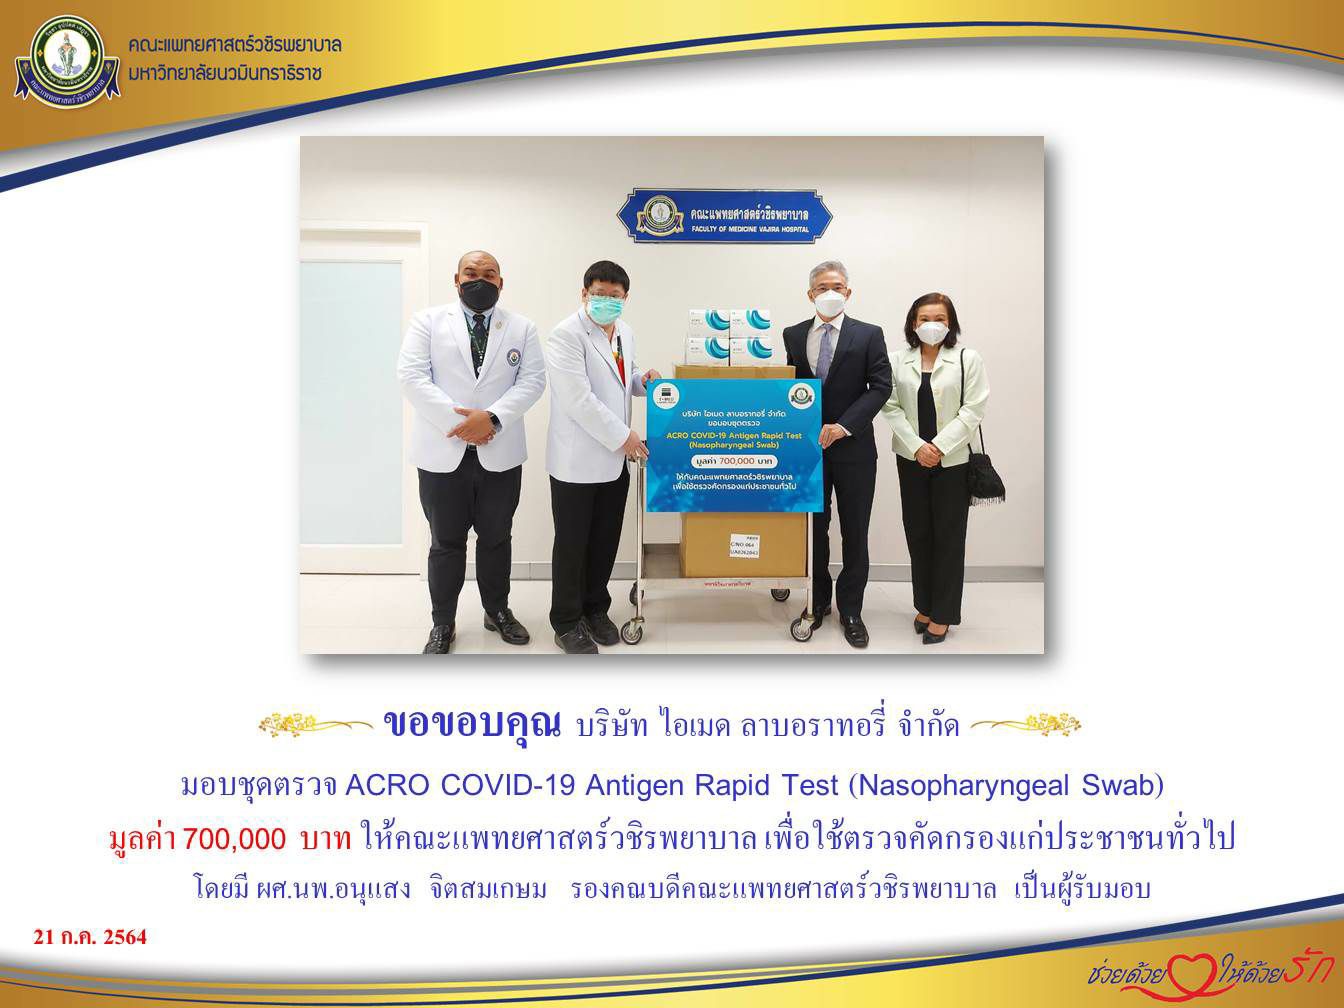 มอบชุดตรวจ ACRO COVID-19 Antigen Rapid Test (Nasopharyngeal Swab) ให้คณะแพทยศาสตร์วชิรพยาบาล